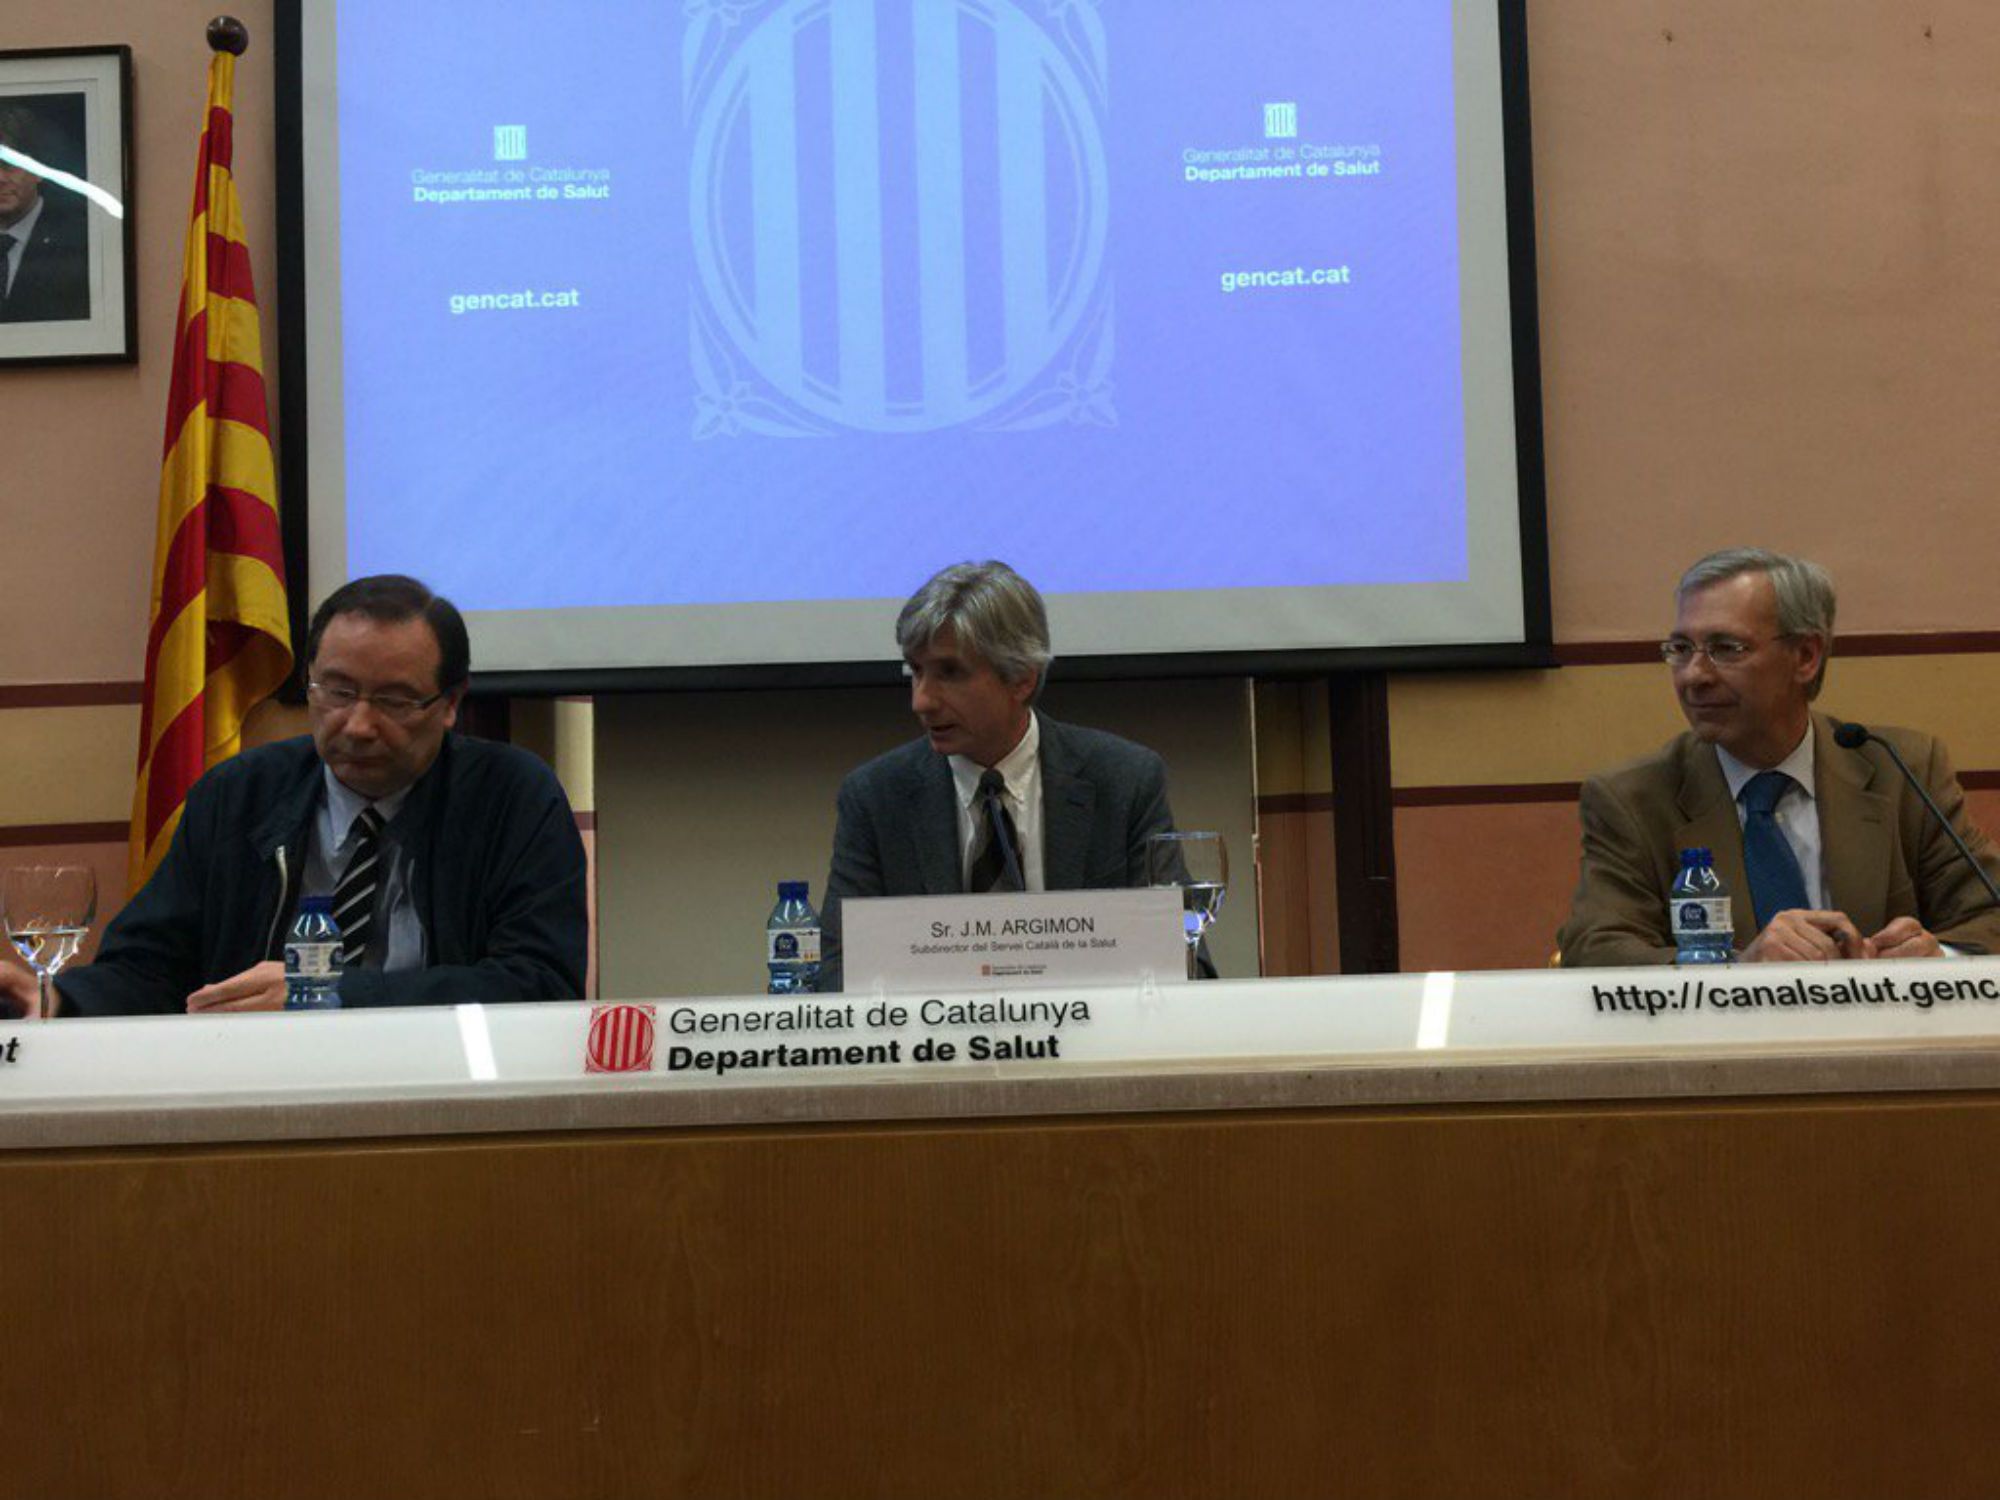 Vídeo: Les pautes de la Generalitat per gestionar situacions d'incertesa o d'estrès social